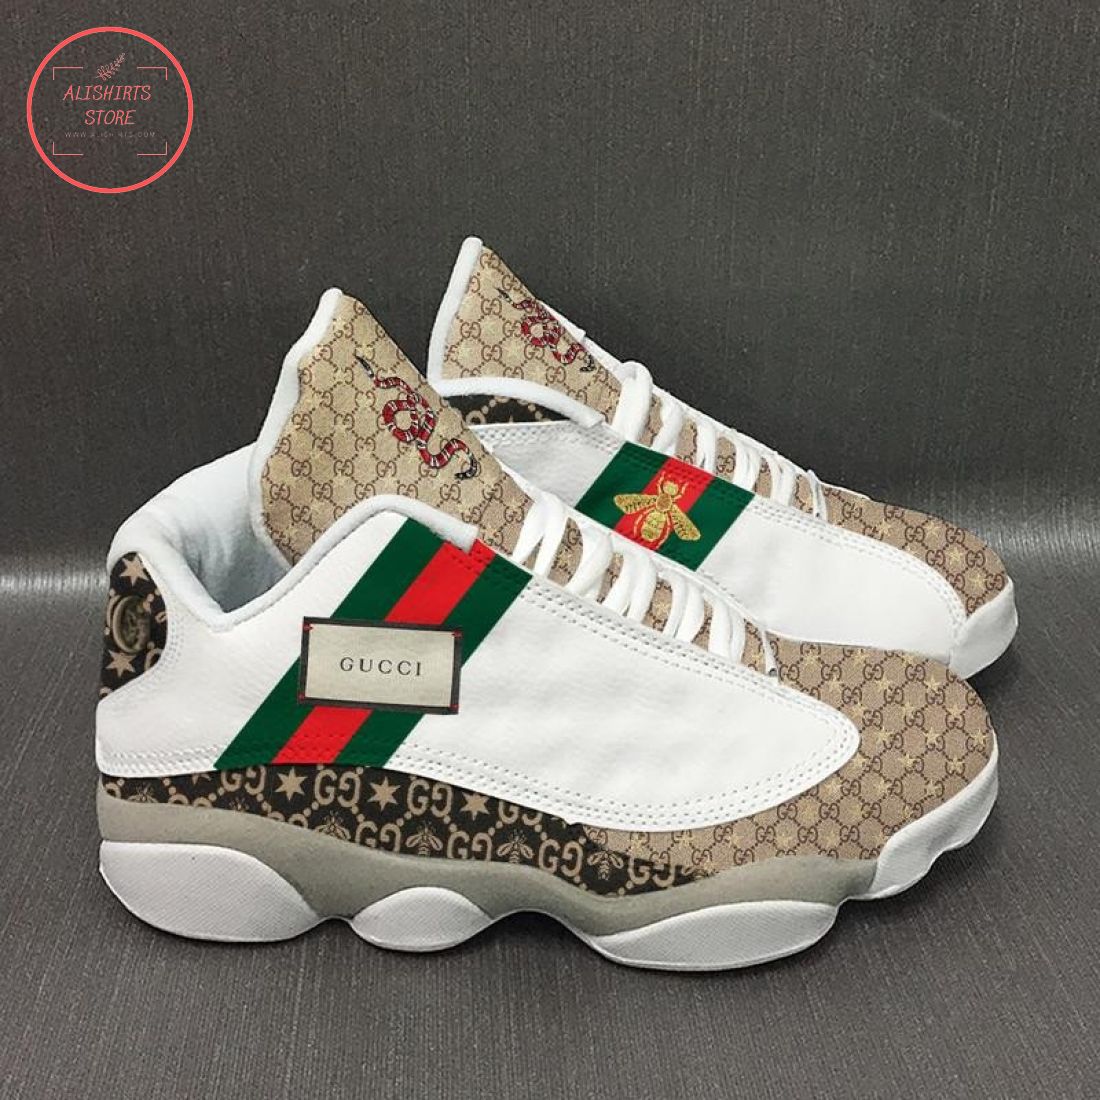 Gucci Italy Hypebeast Air Jordan 13 Sneaker